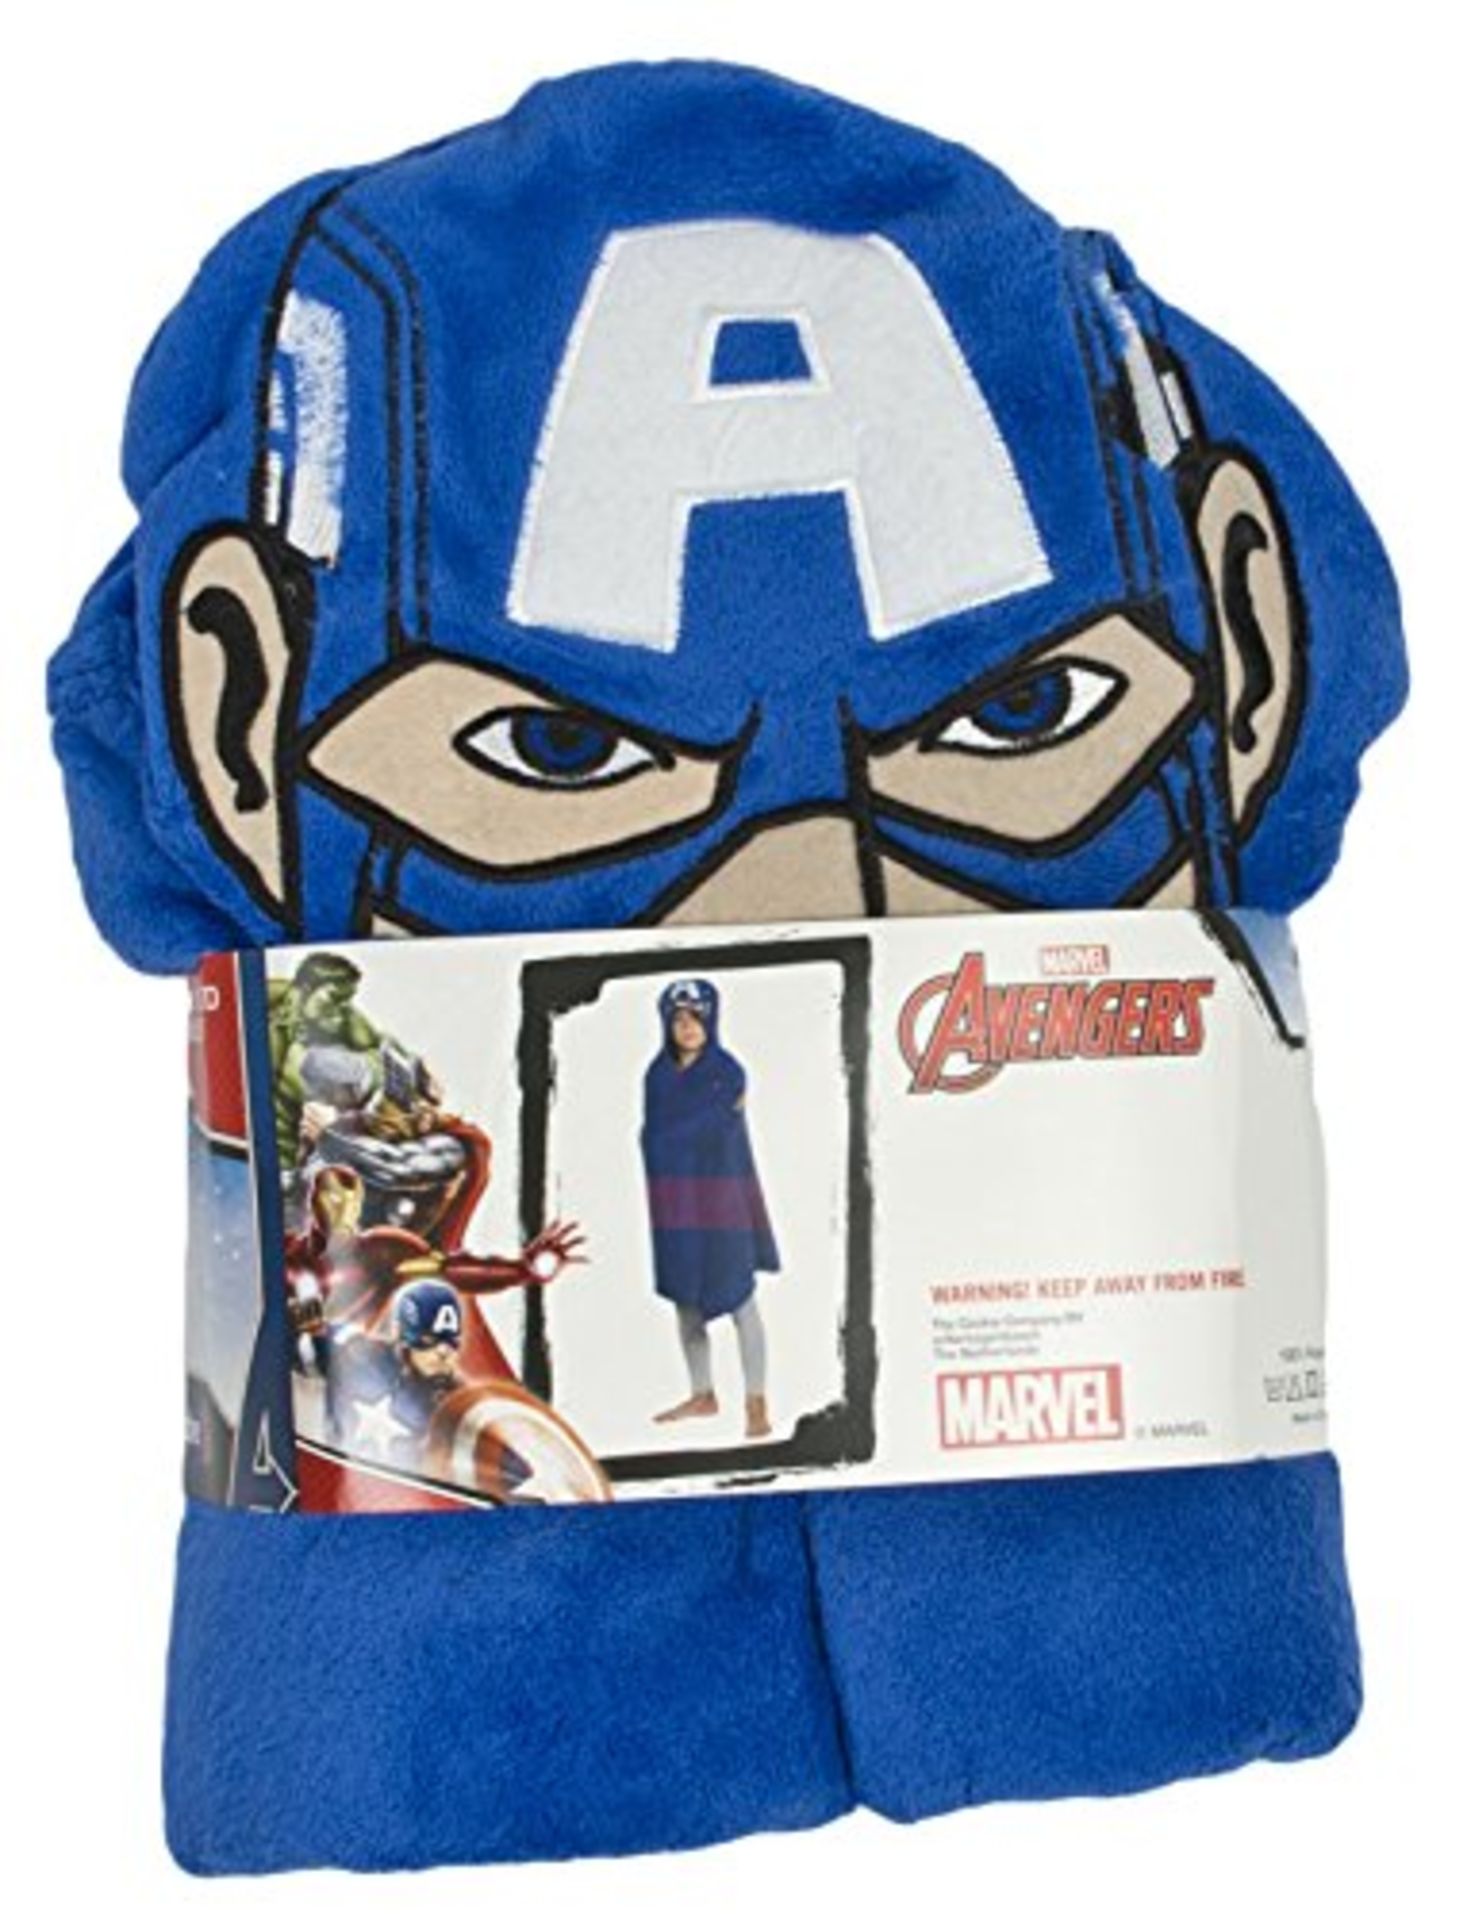 1pcs Brand new sealed Marvel Avengers Captain America Cuddle fleece blanket     1pcs Brand new